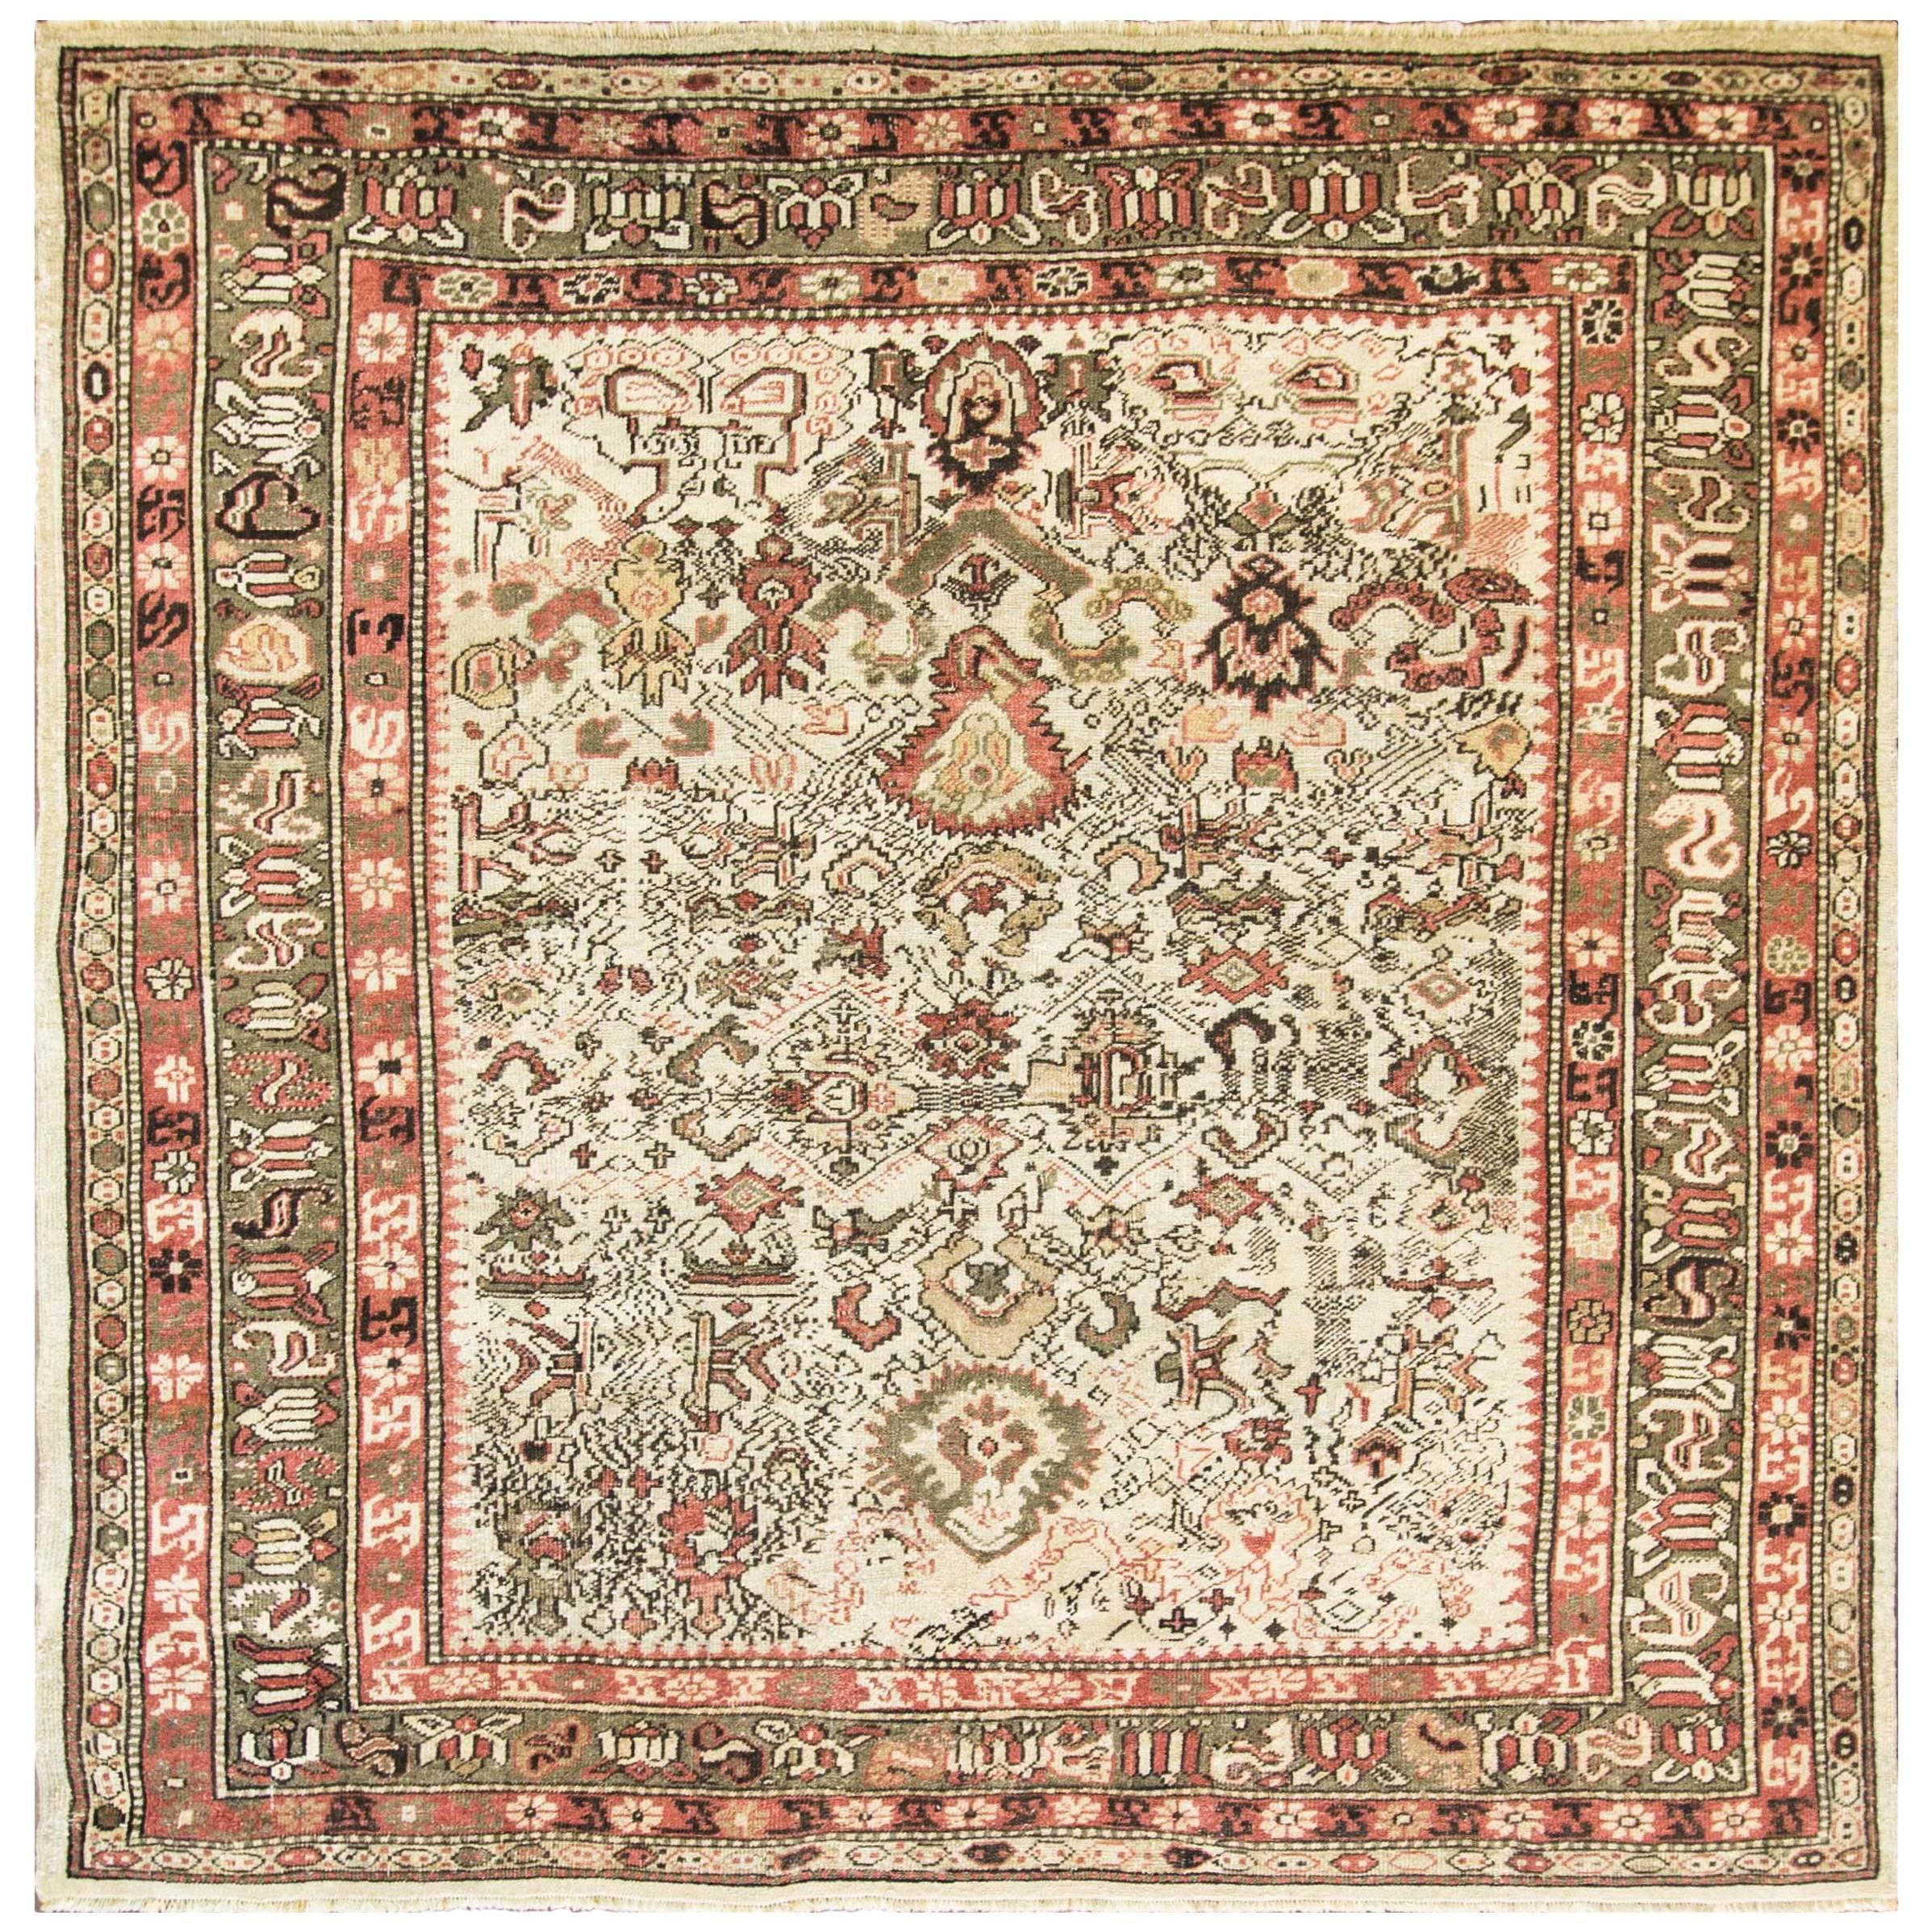 Unusual Antique Northwest Persian Carpet